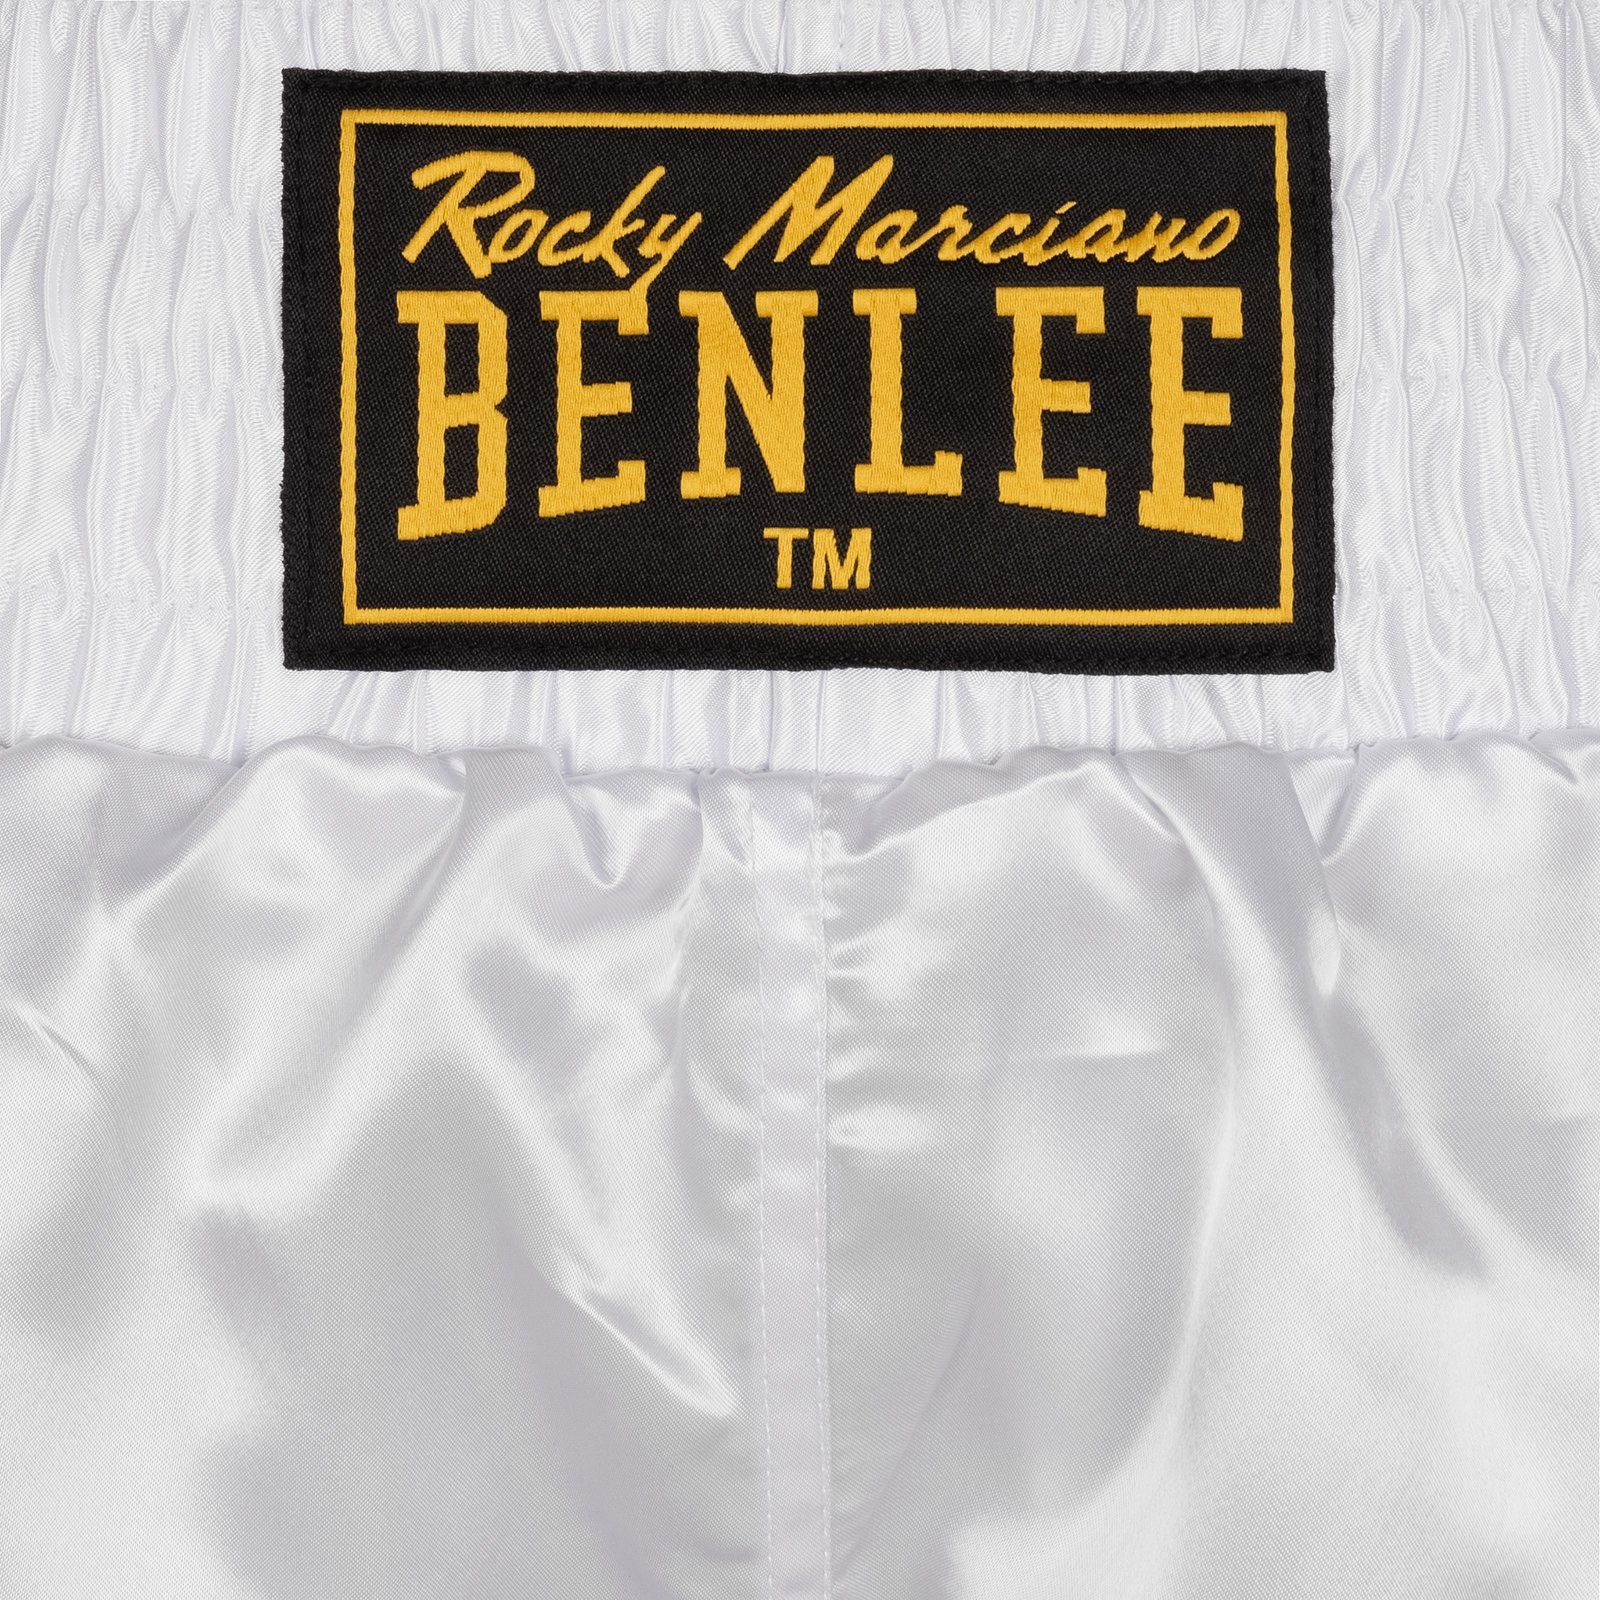 BOXING White UNI Trainingshose Marciano Rocky Benlee